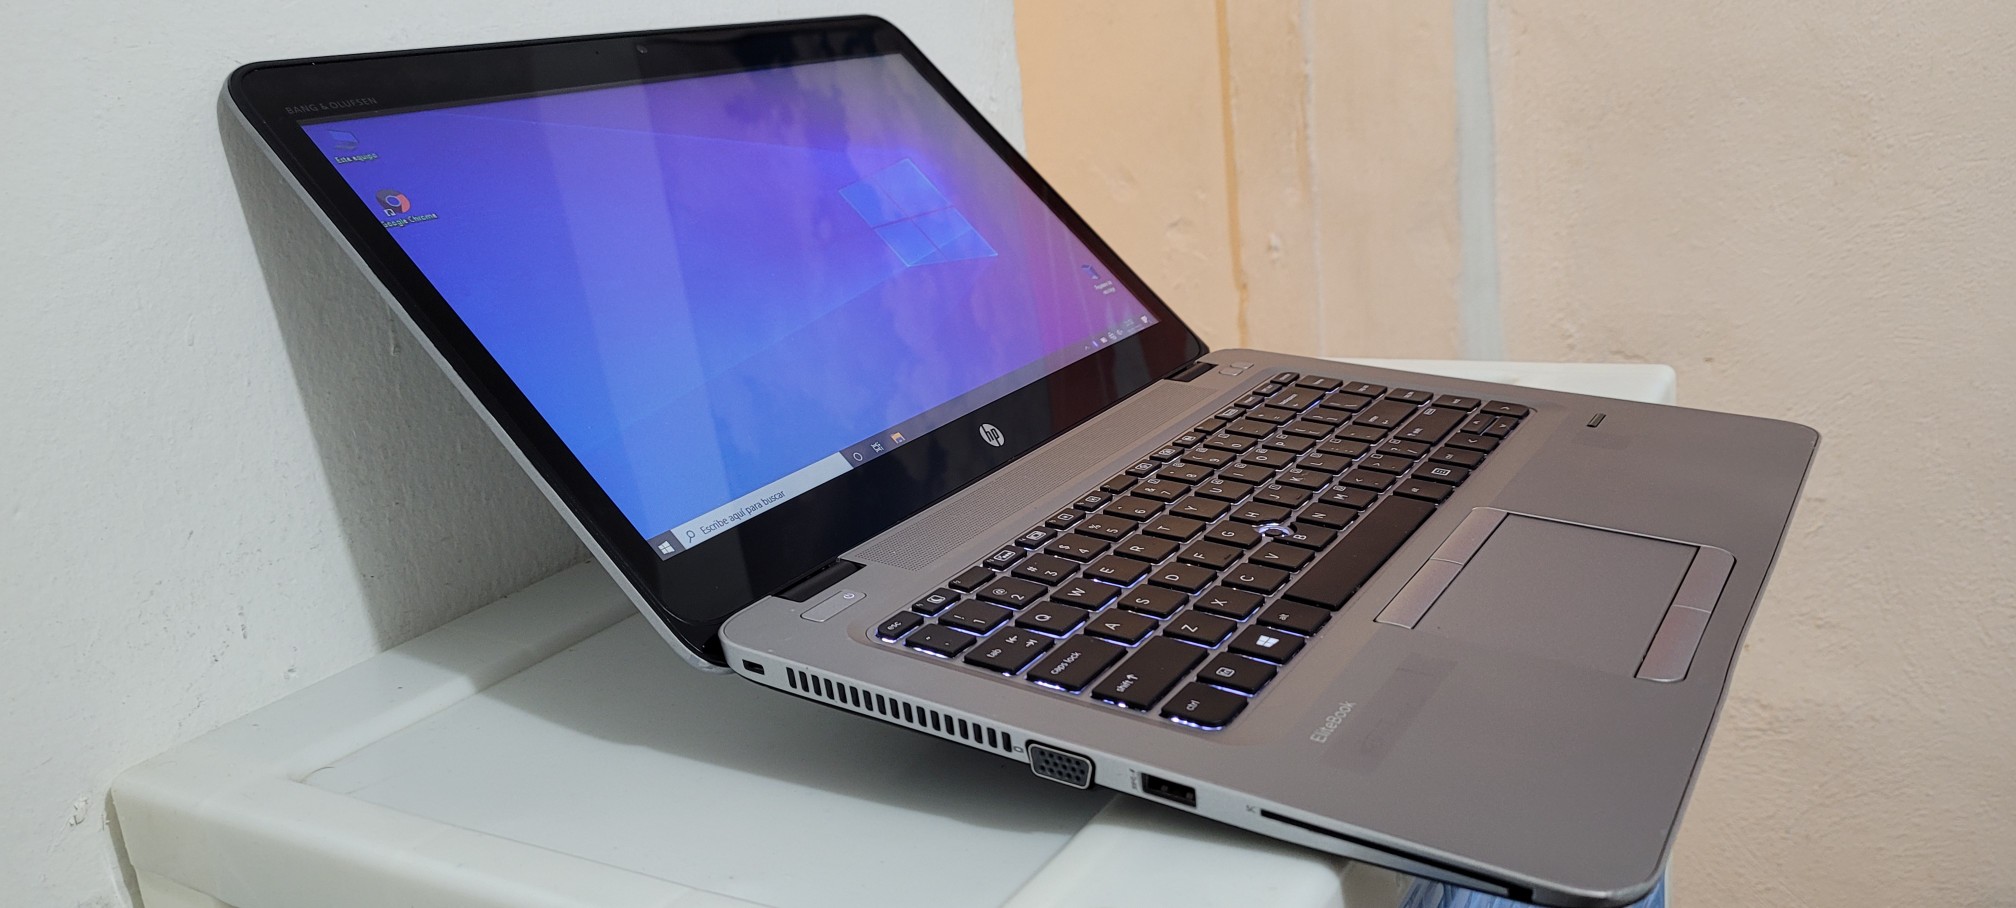 computadoras y laptops - Laptop hp G2 14 Pulg Core i5 6ta Gen Ram 8gb ddr4 trae dos Disco duros Wifi 1